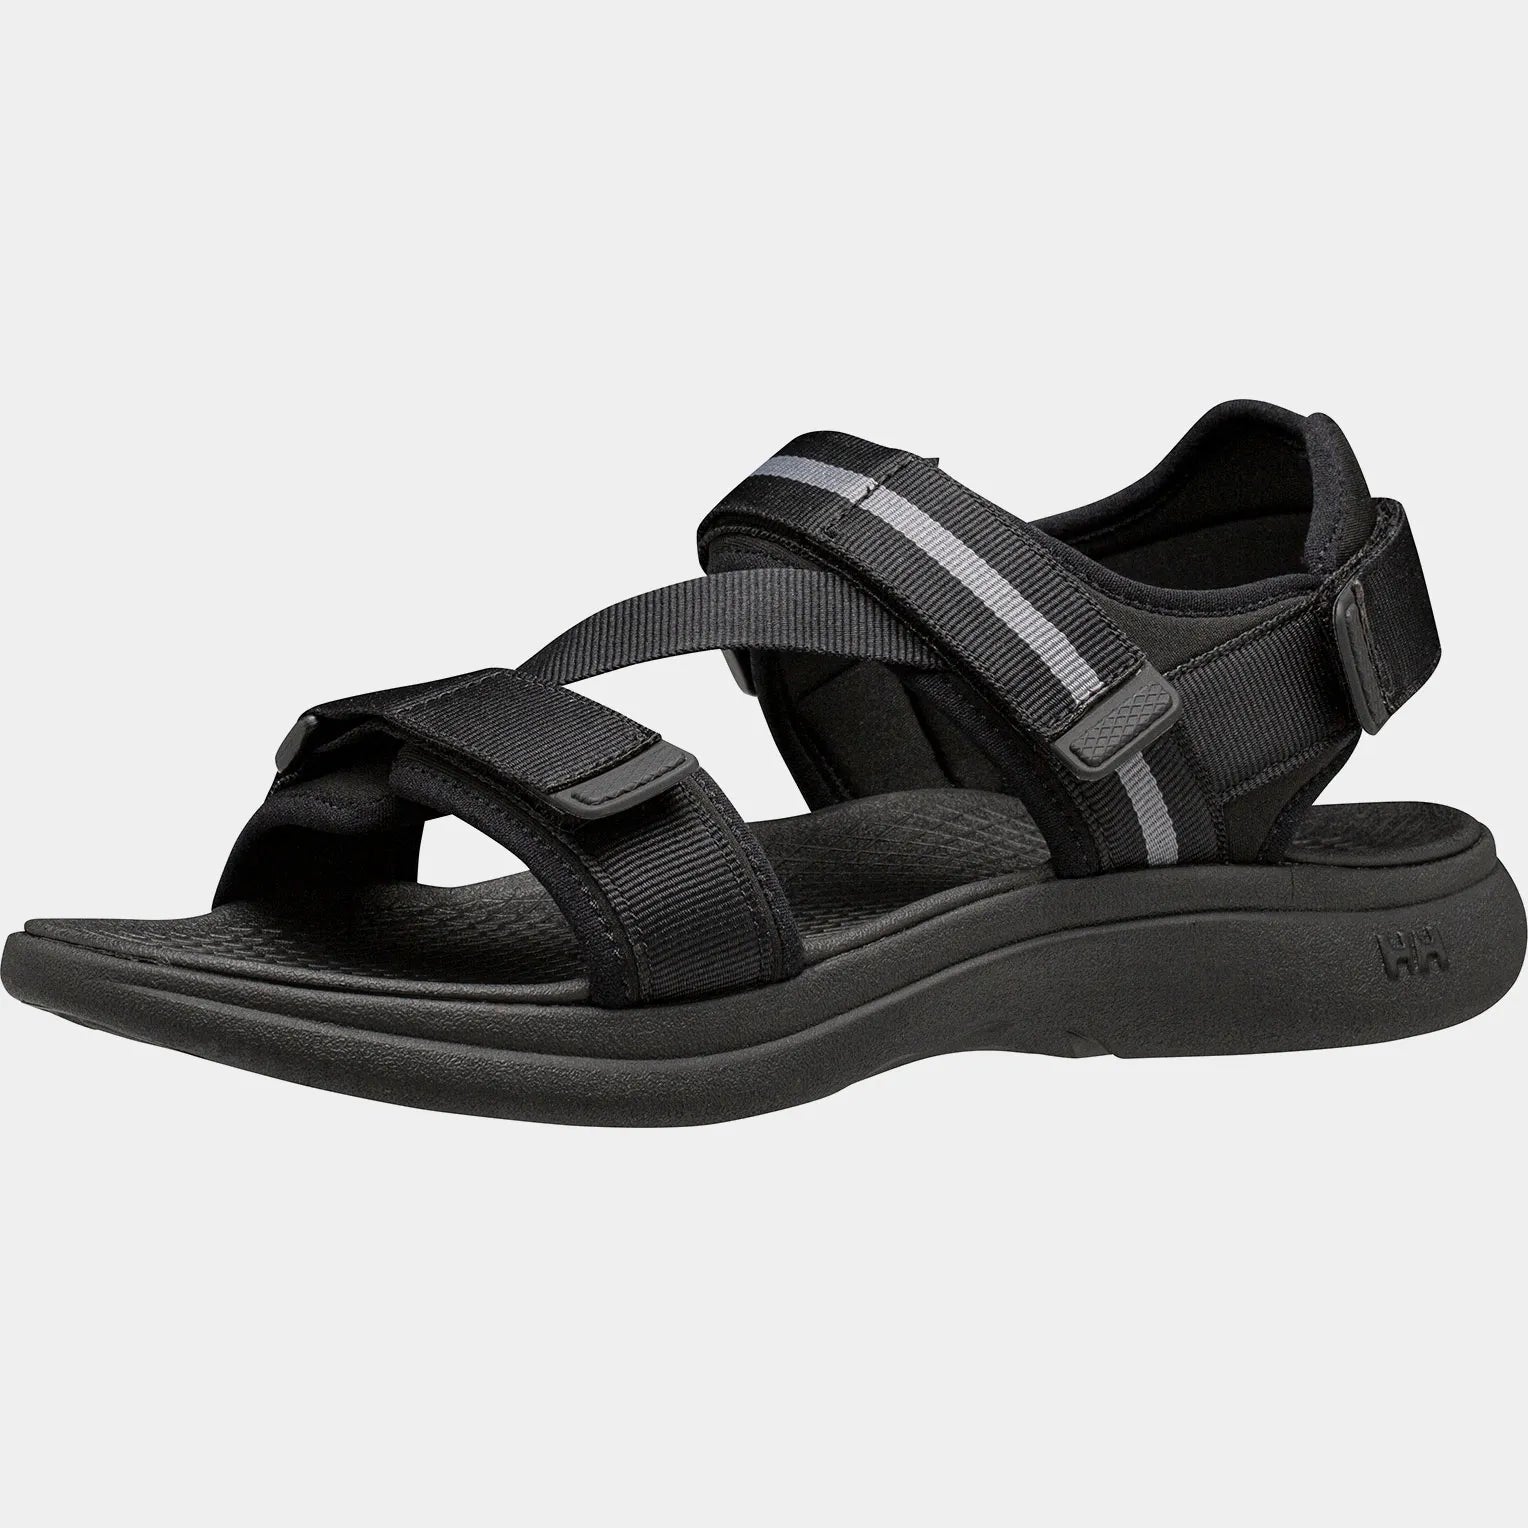 Men's Sandefjord Sandals - Black